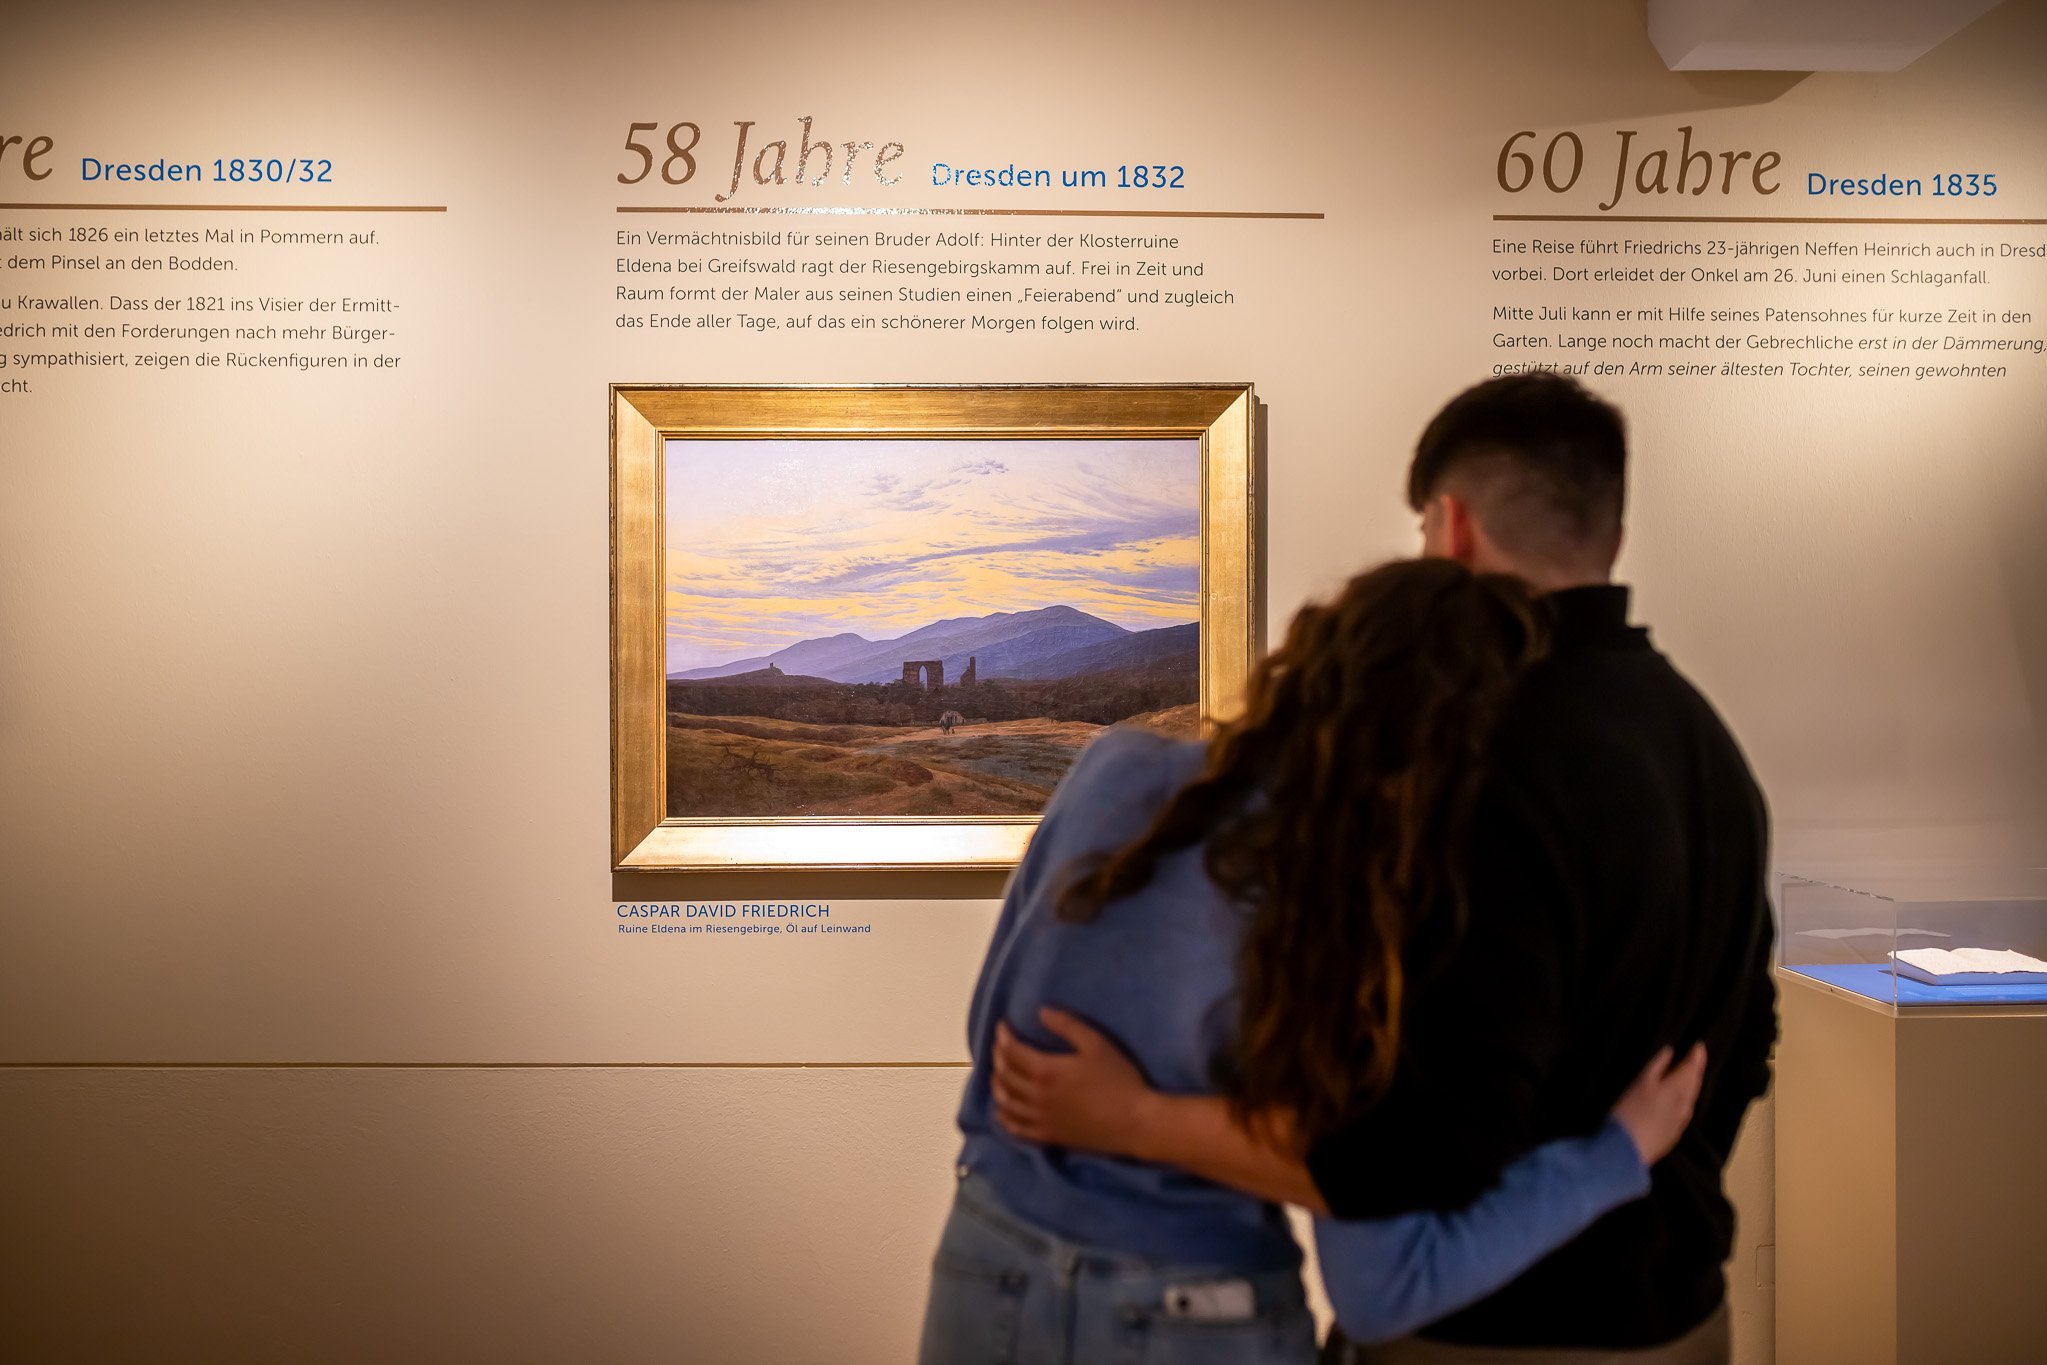 Ein sich umarmendes Paar betrachtet das Gemälde „Ruine Eldena im Riesengebirge“.